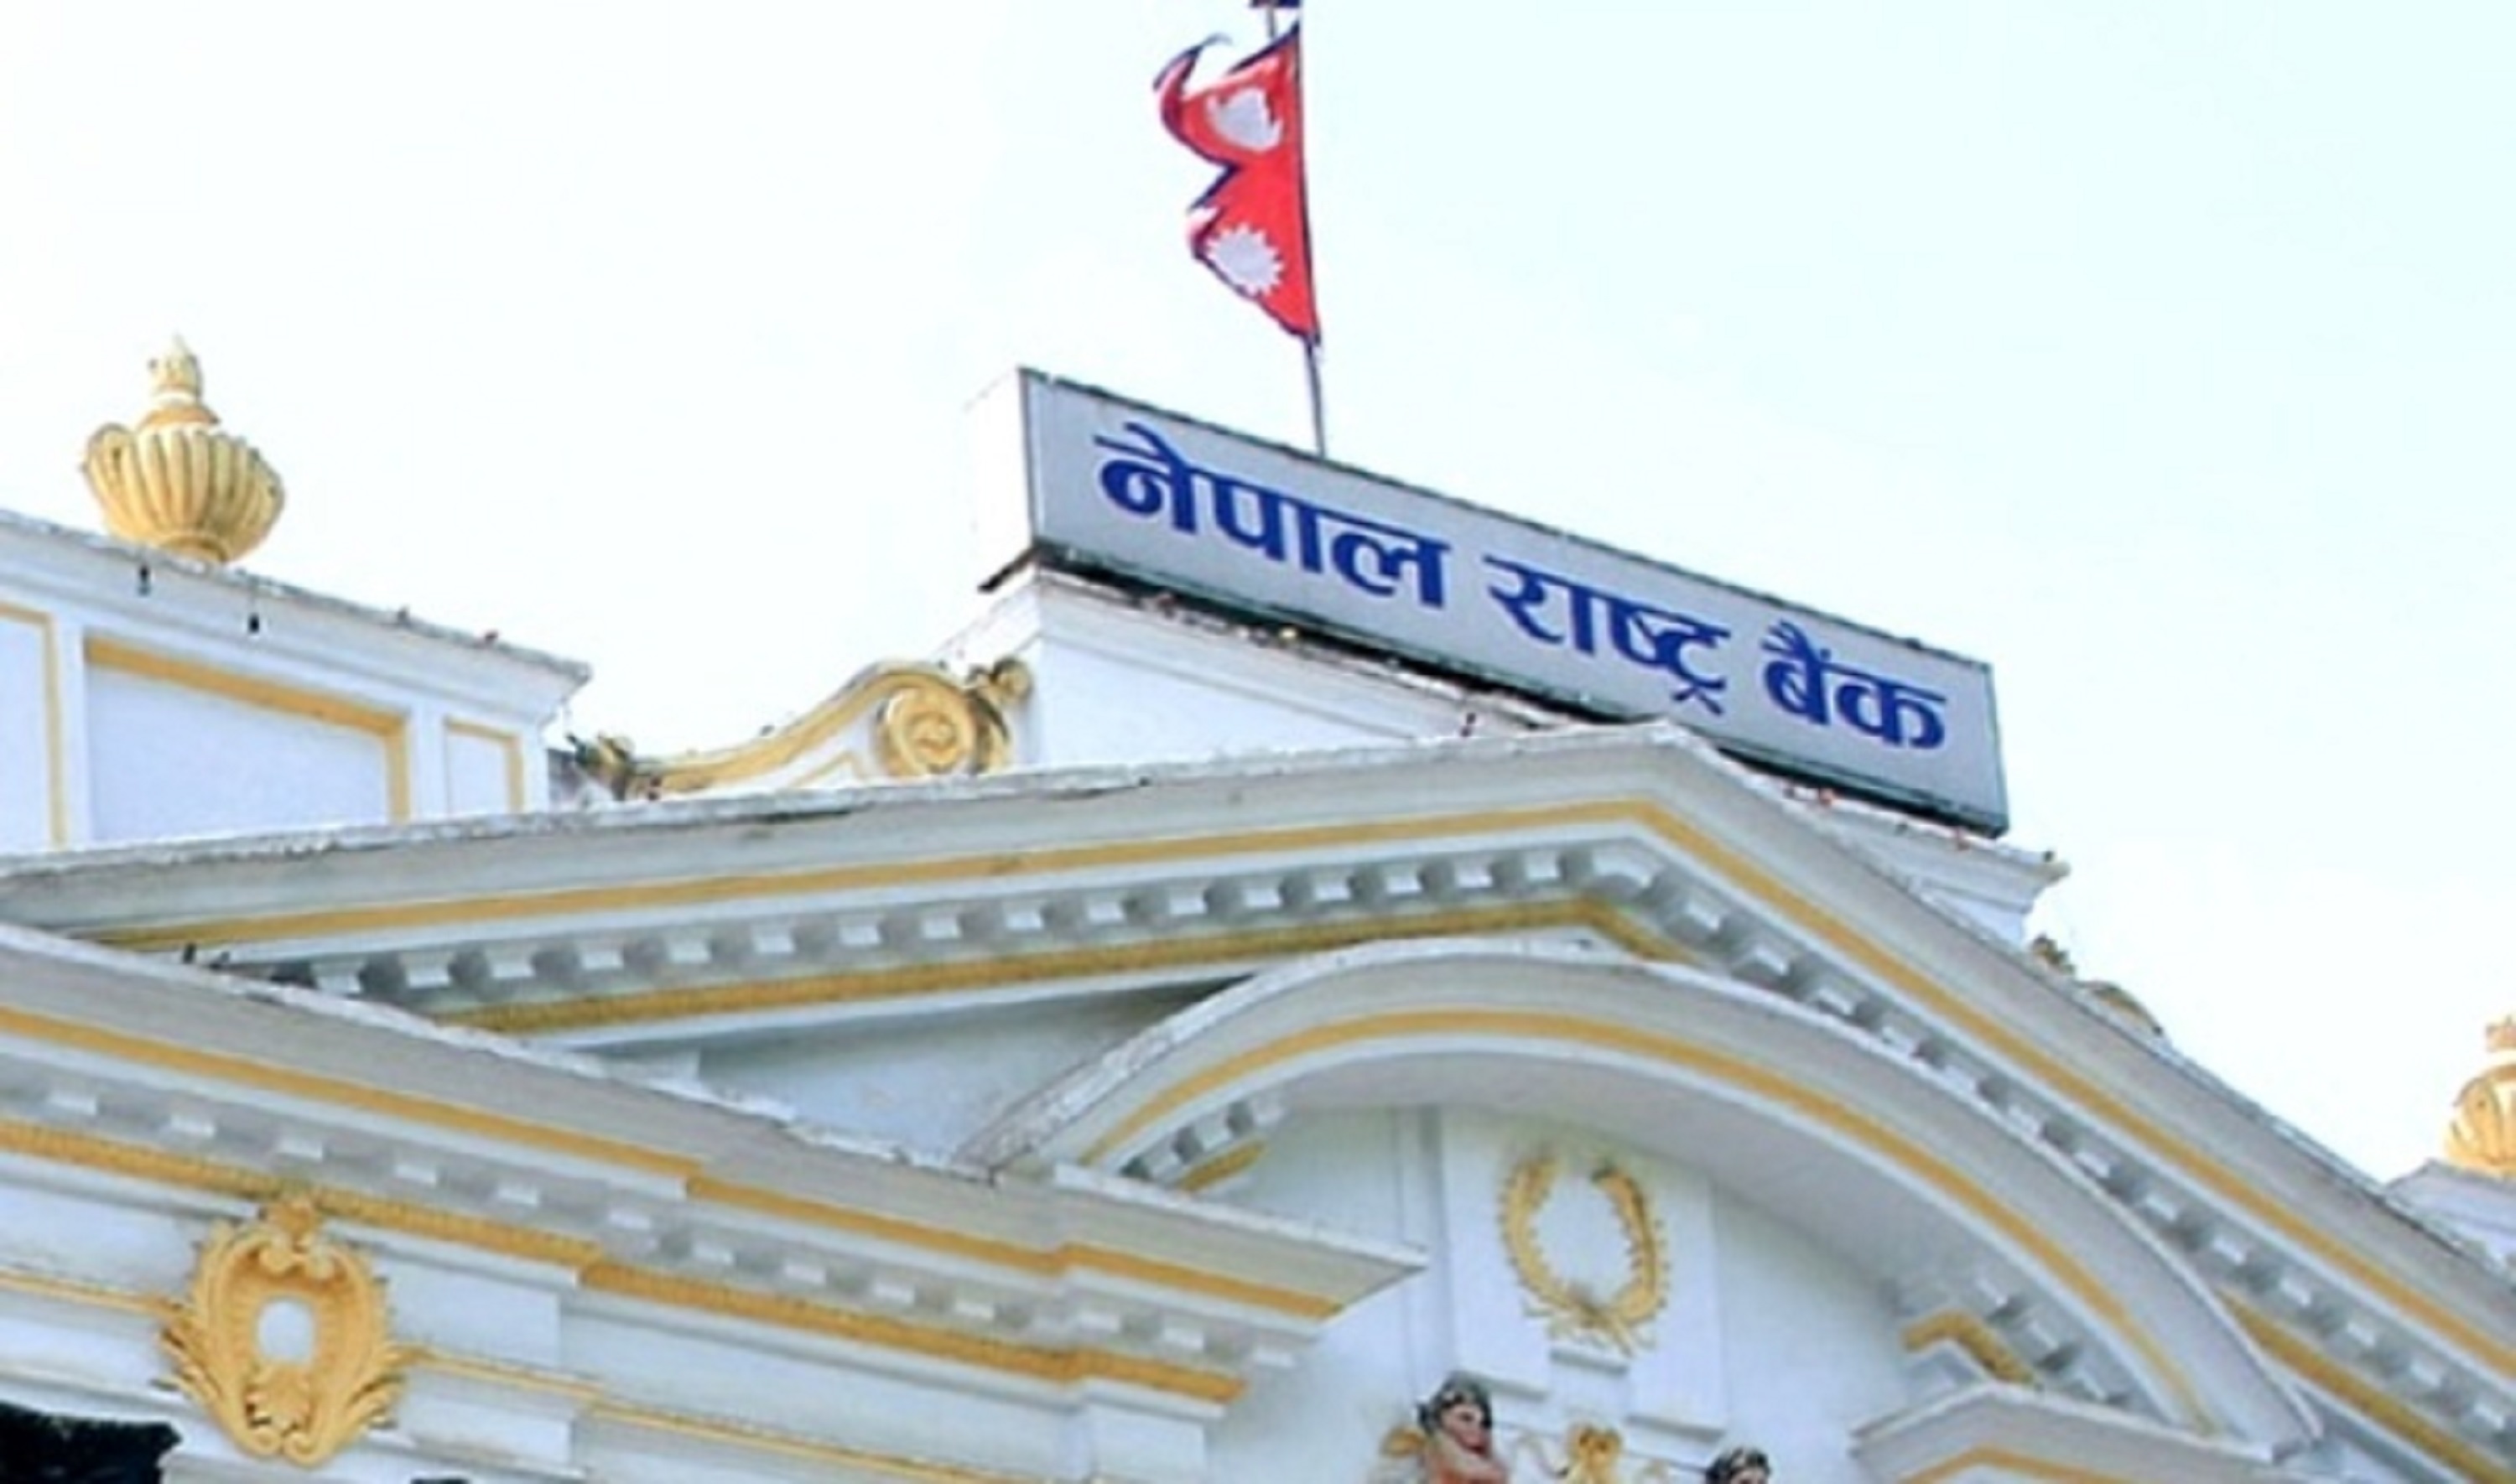 नेपाल राष्ट्र बैंकले गर्यो ७५, ०७६ को अर्धवार्षिक समीक्षा